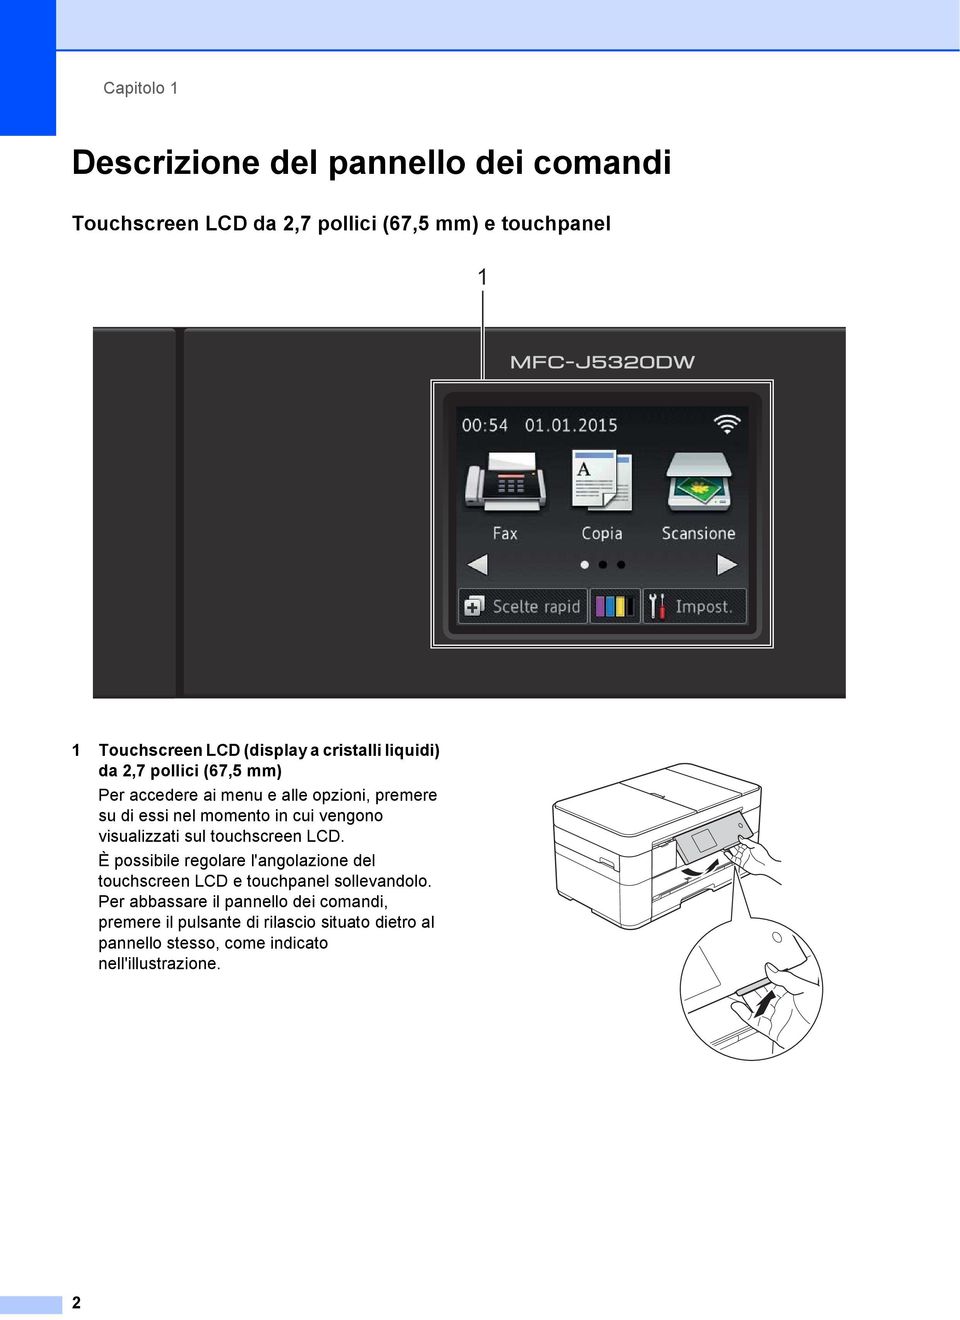 visualizzati sul touchscreen LCD. È possibile regolare l'angolazione del touchscreen LCD e touchpanel sollevandolo.